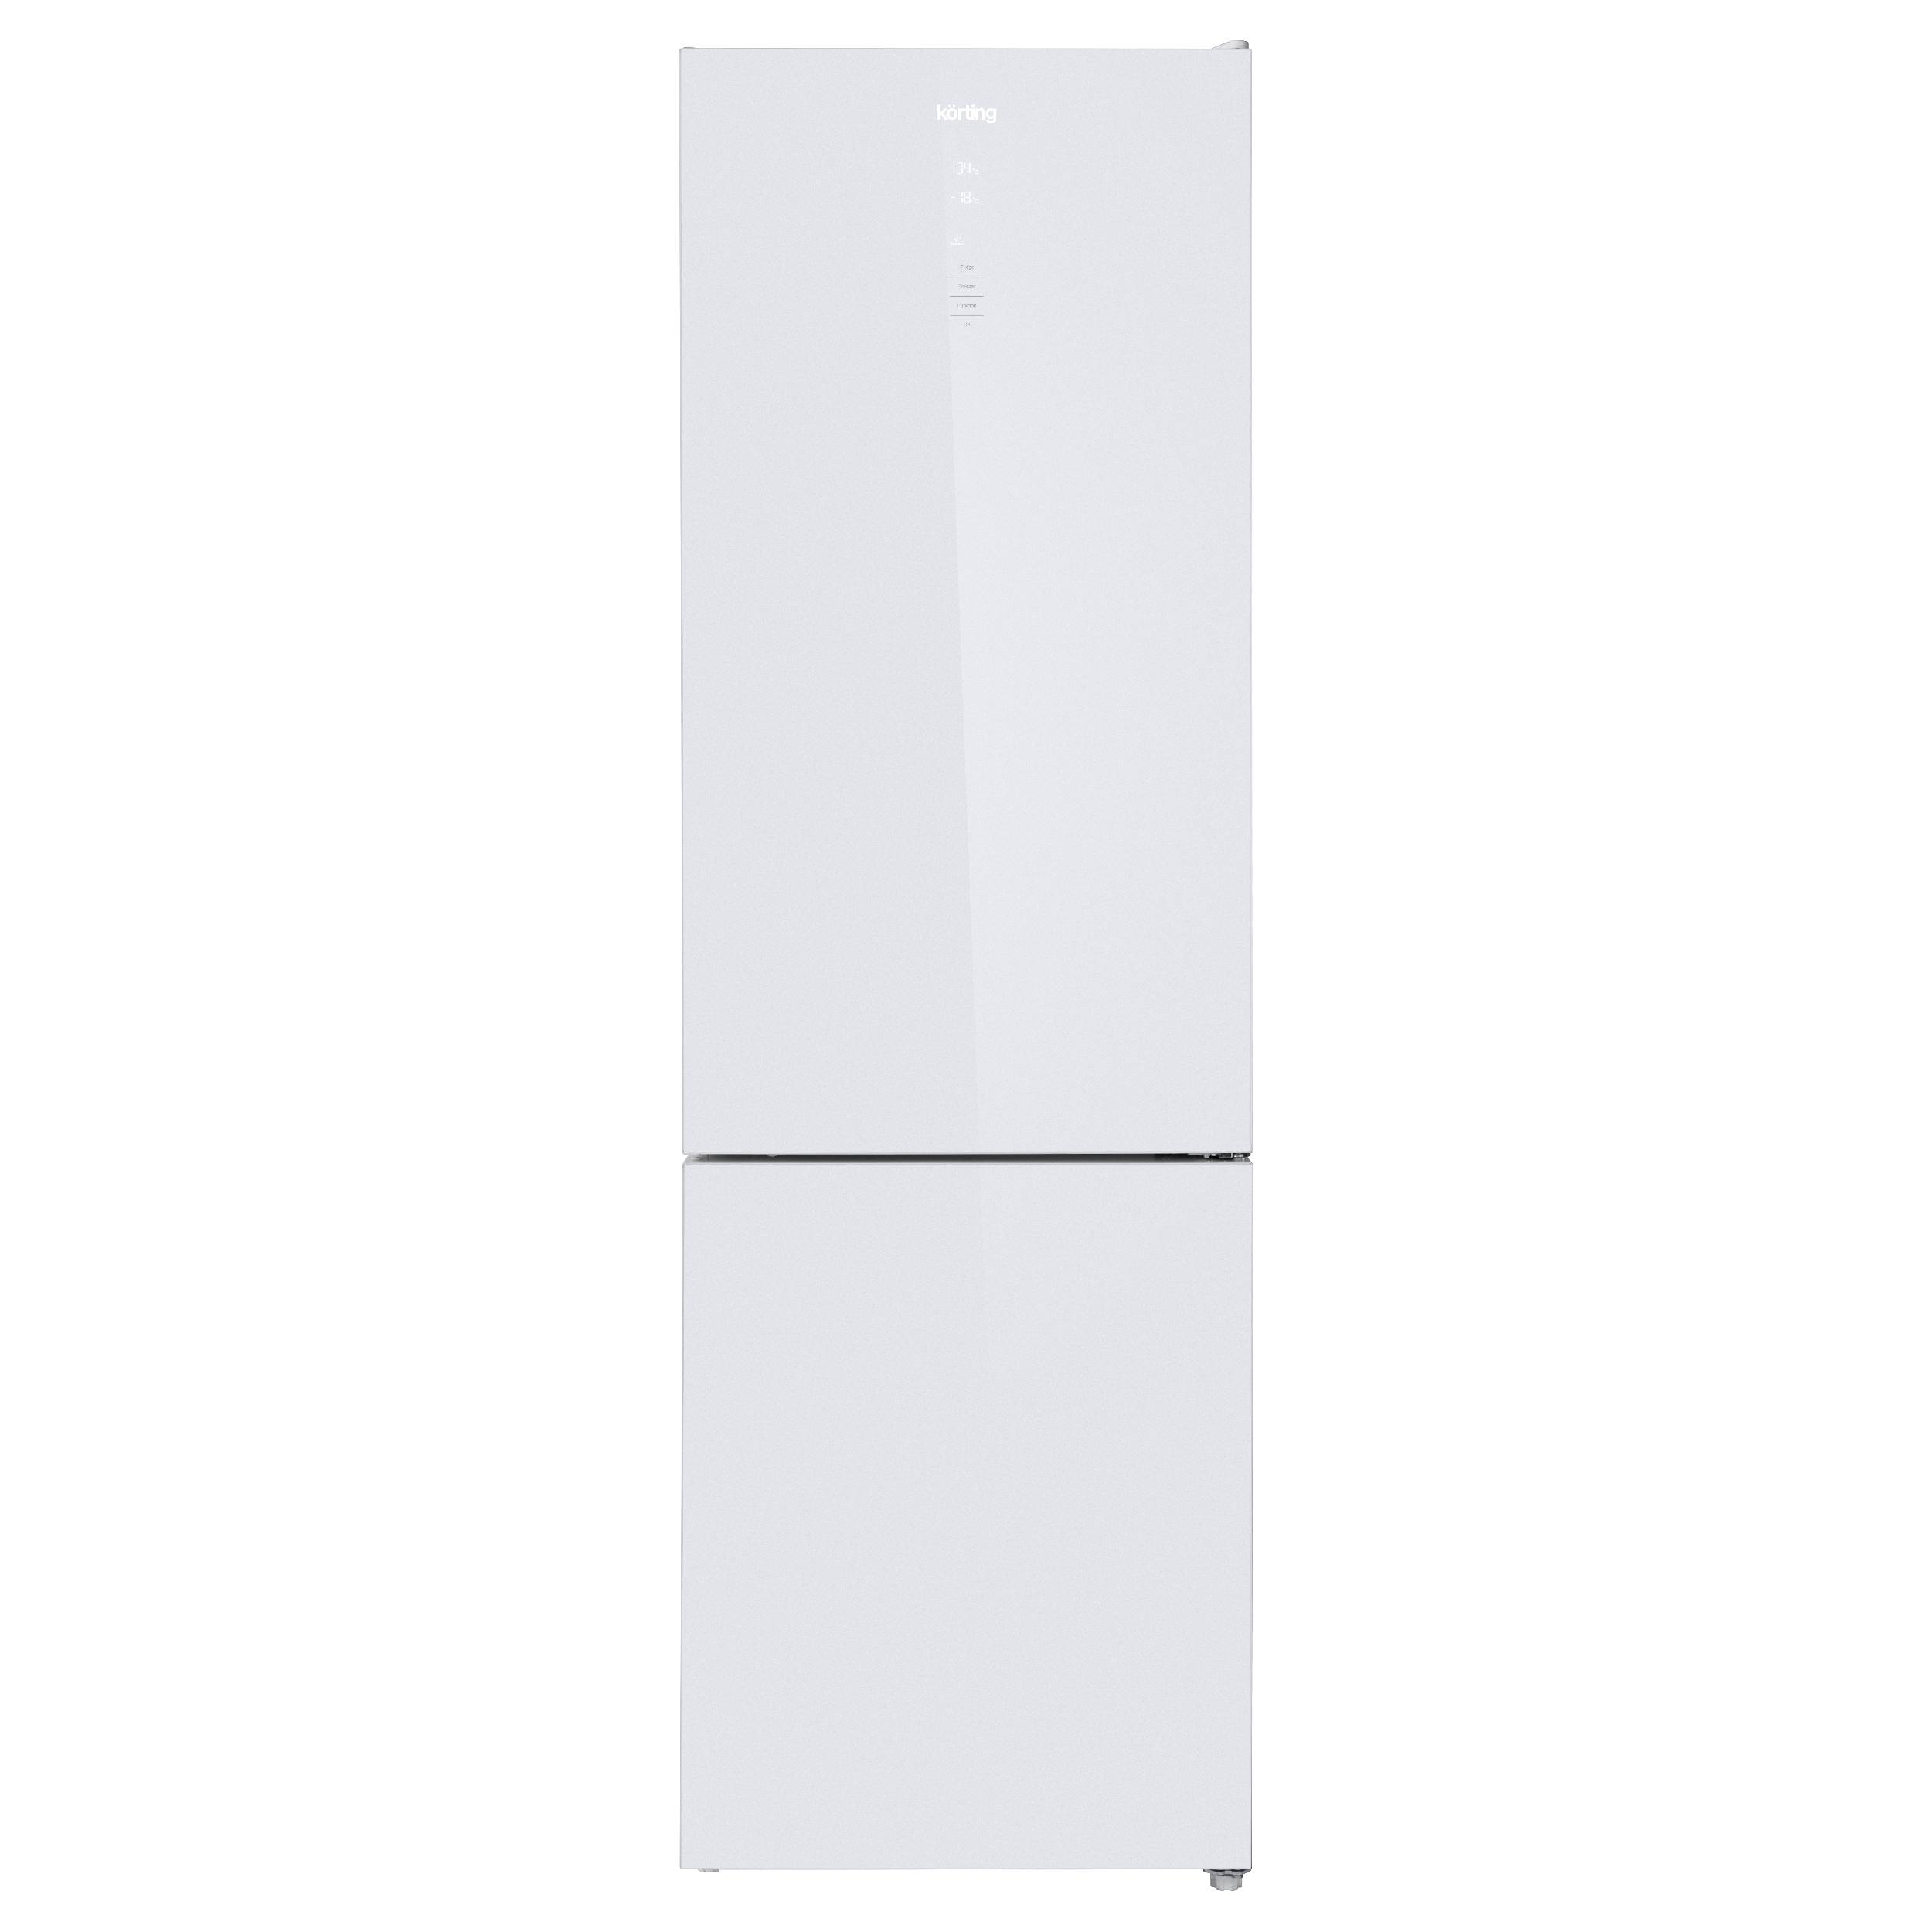 Холодильник Korting KNFC 62370 GW белый, серебристый холодильник korting knfc 71928 gn